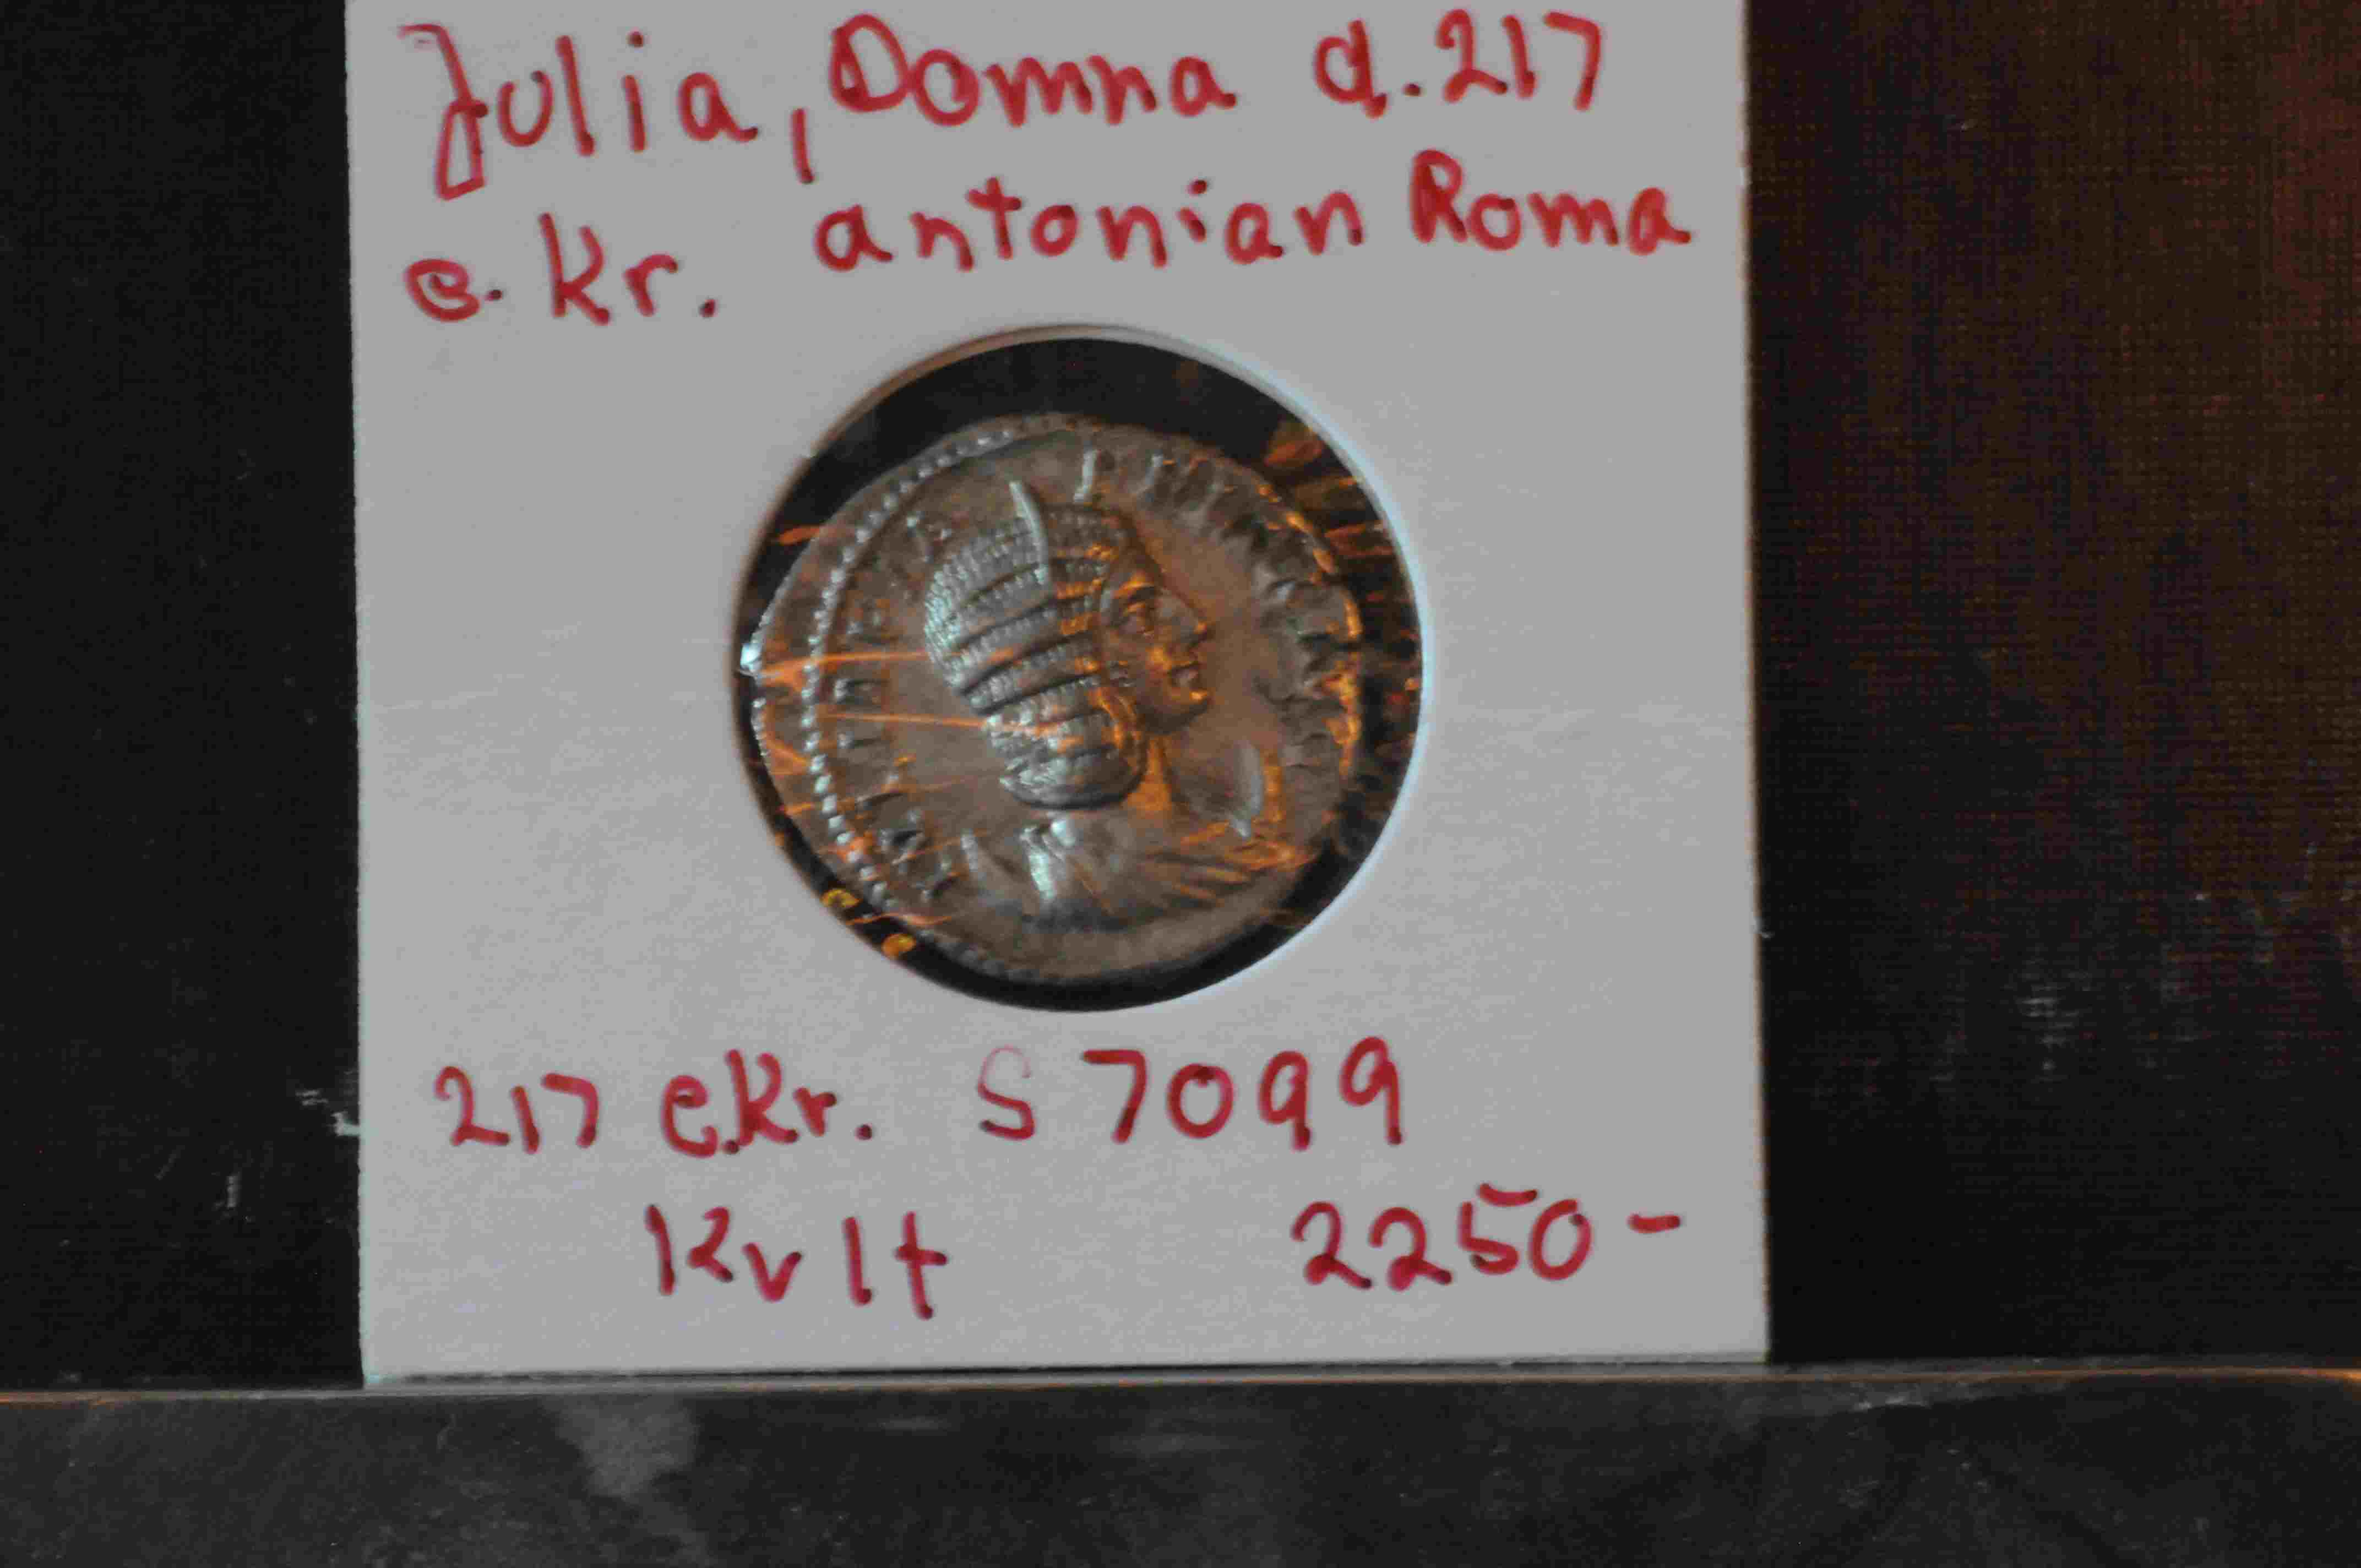 Julia Domna 217 e Kr Antonian Roma S 7099 kv1+ G Tesen